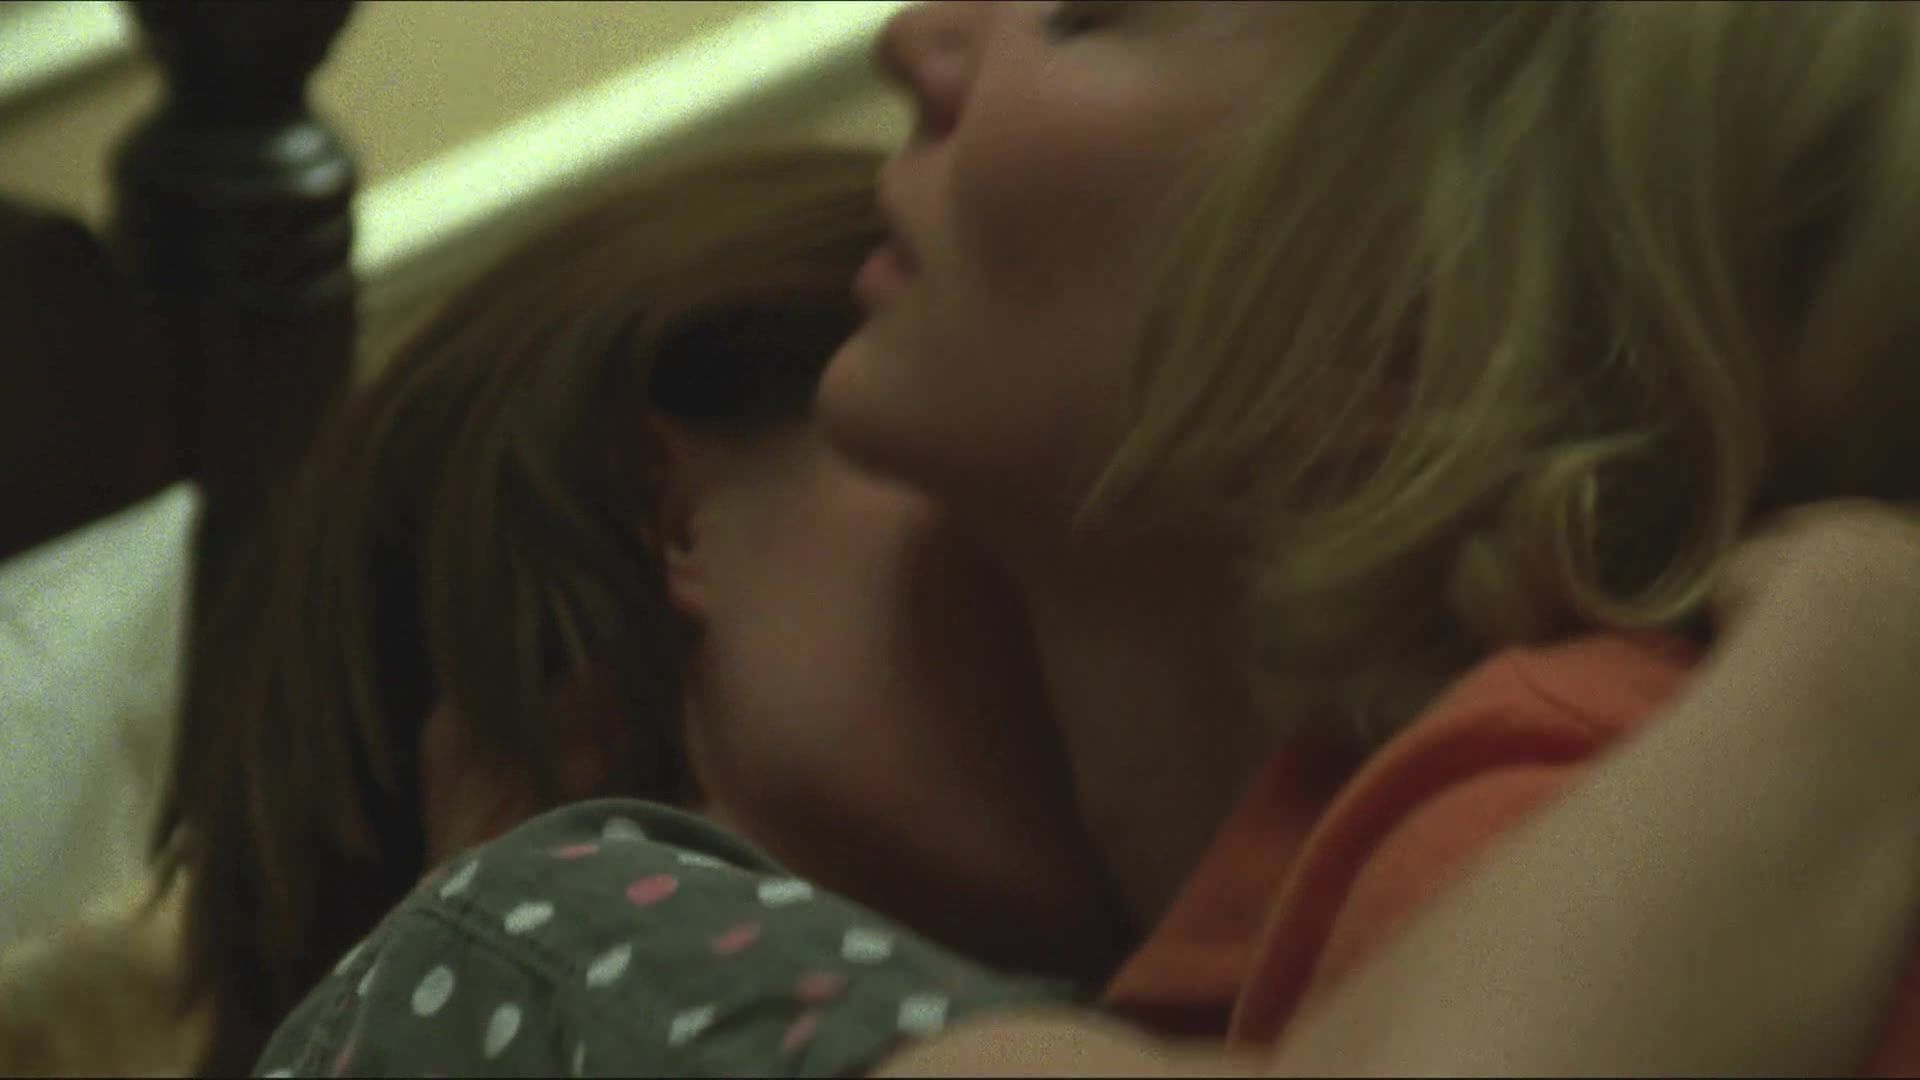 Outdoor Sex Rooney Mara, Cate Blanchett nude - Carol (2015) Forbidden